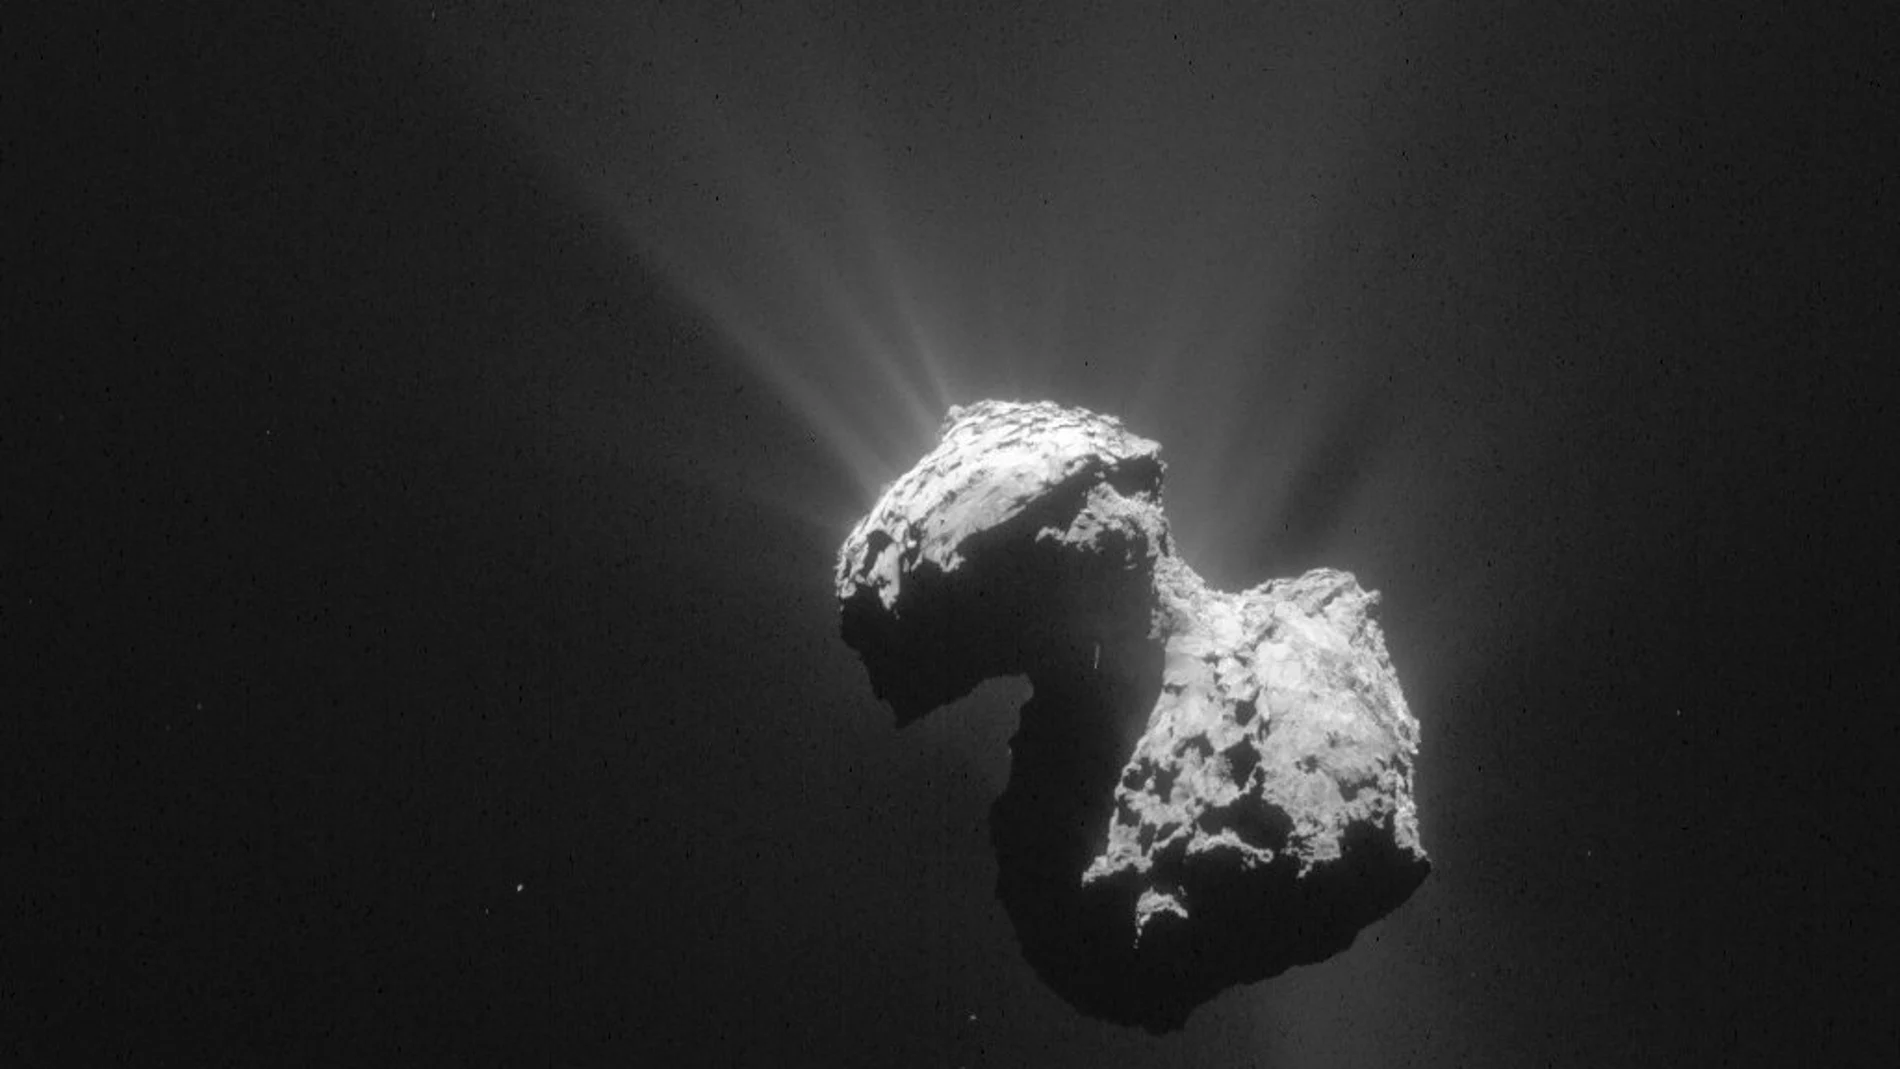 Fotografía facilitada por ESA (Agencia Espacial Europea) de una imagen del cometa 67P/Churyumov-Gerasimenko tomada el 7 de julio de 2015